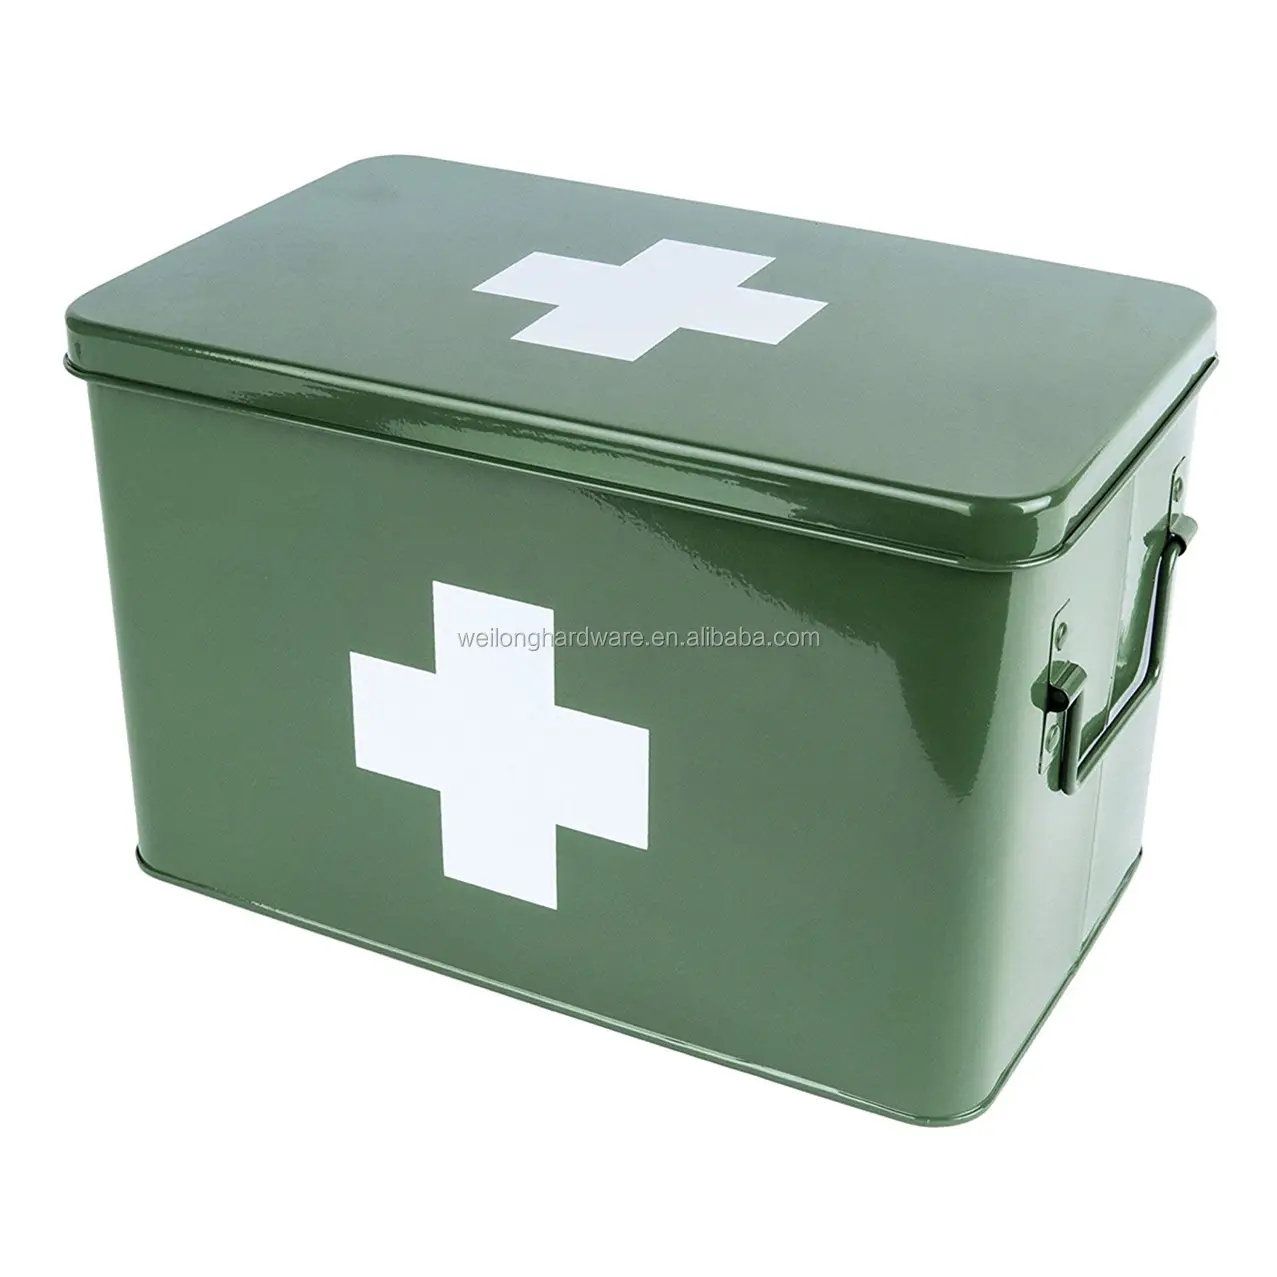 โลหะขนาดใหญ่กล่องเก็บยา First Aid กล่องยาดีบุกคู่ชั้นและช่อง